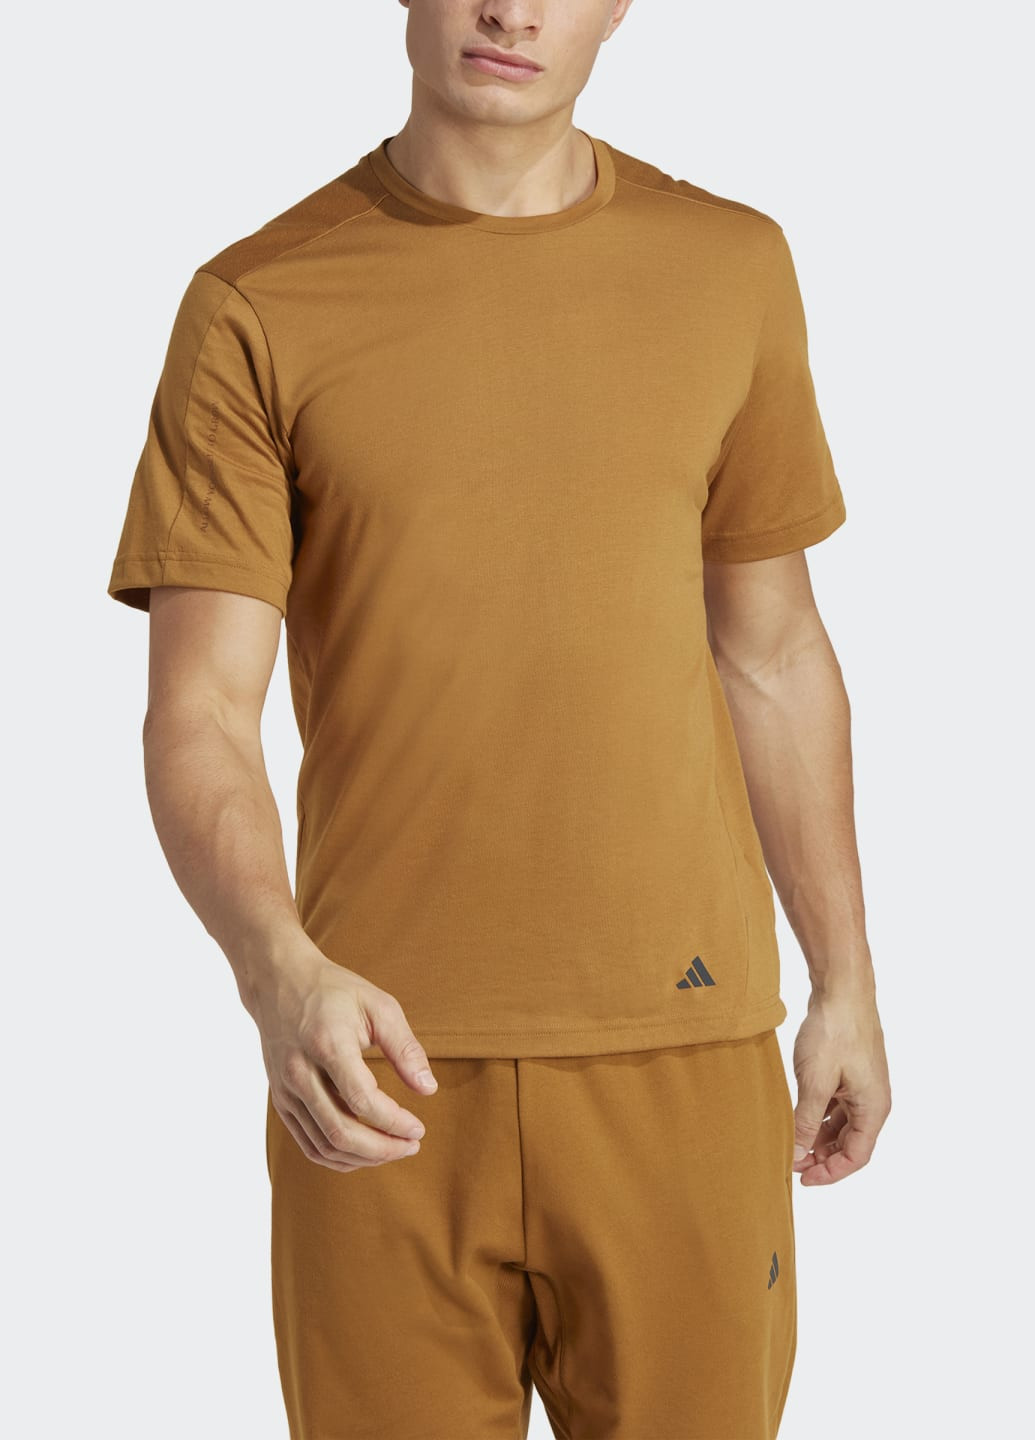 Коричневая футболка yoga base training adidas